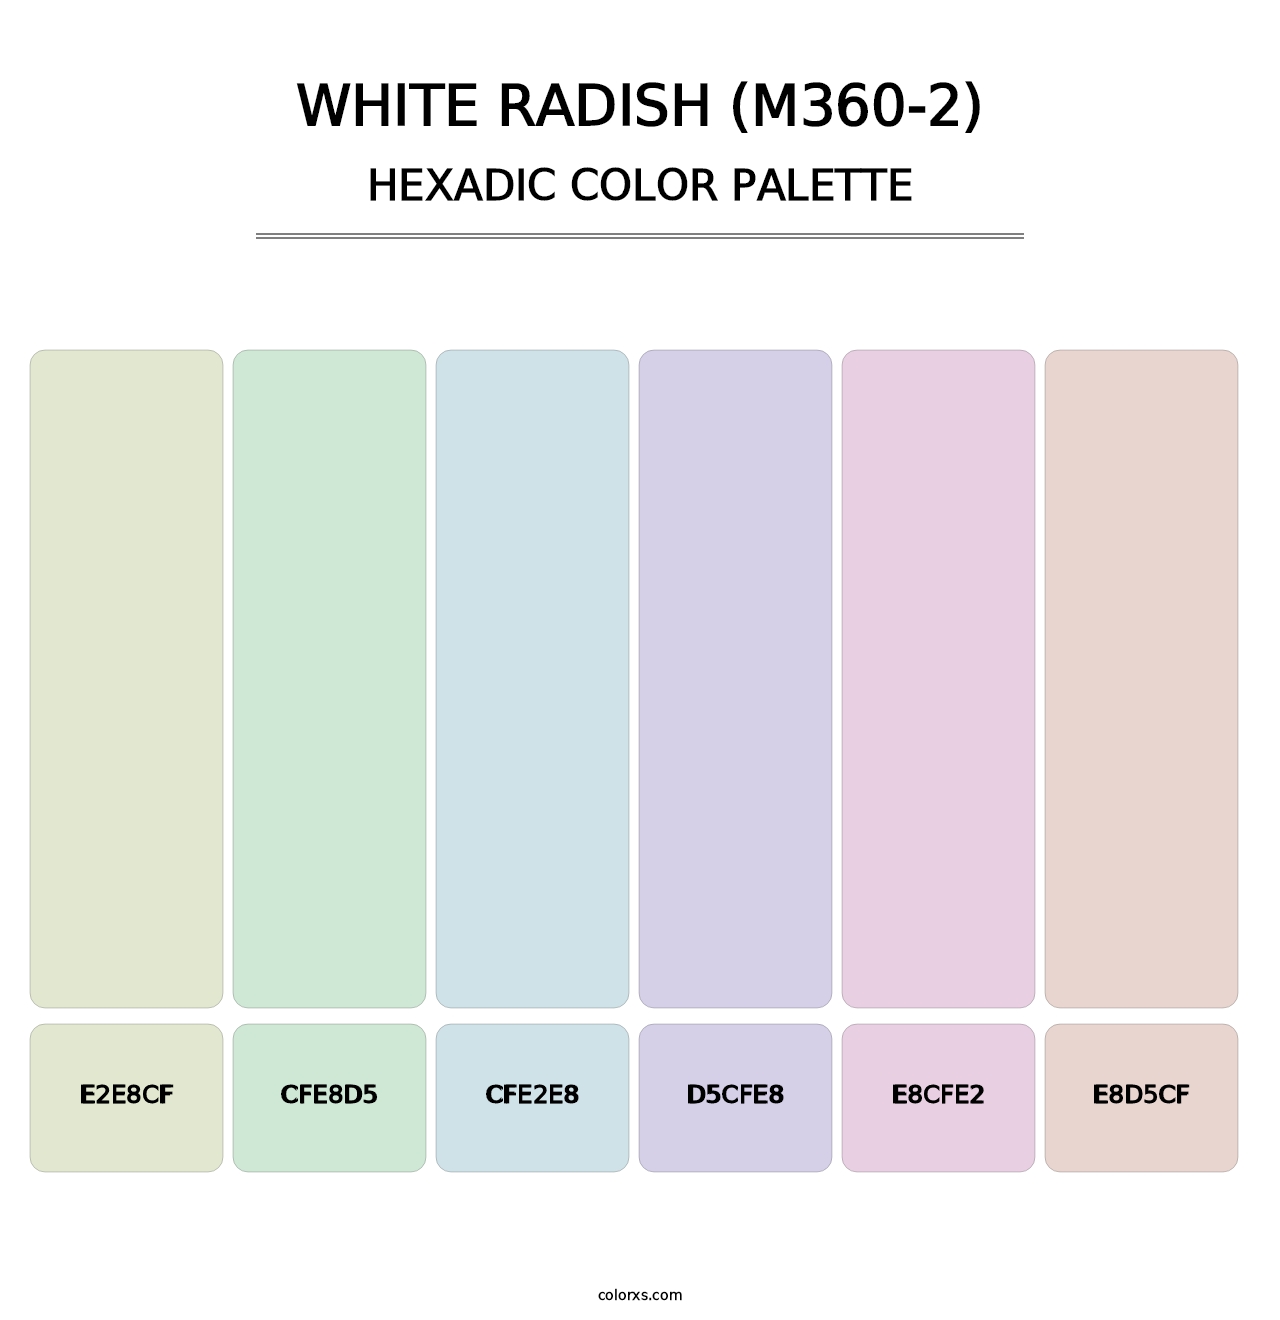 White Radish (M360-2) - Hexadic Color Palette